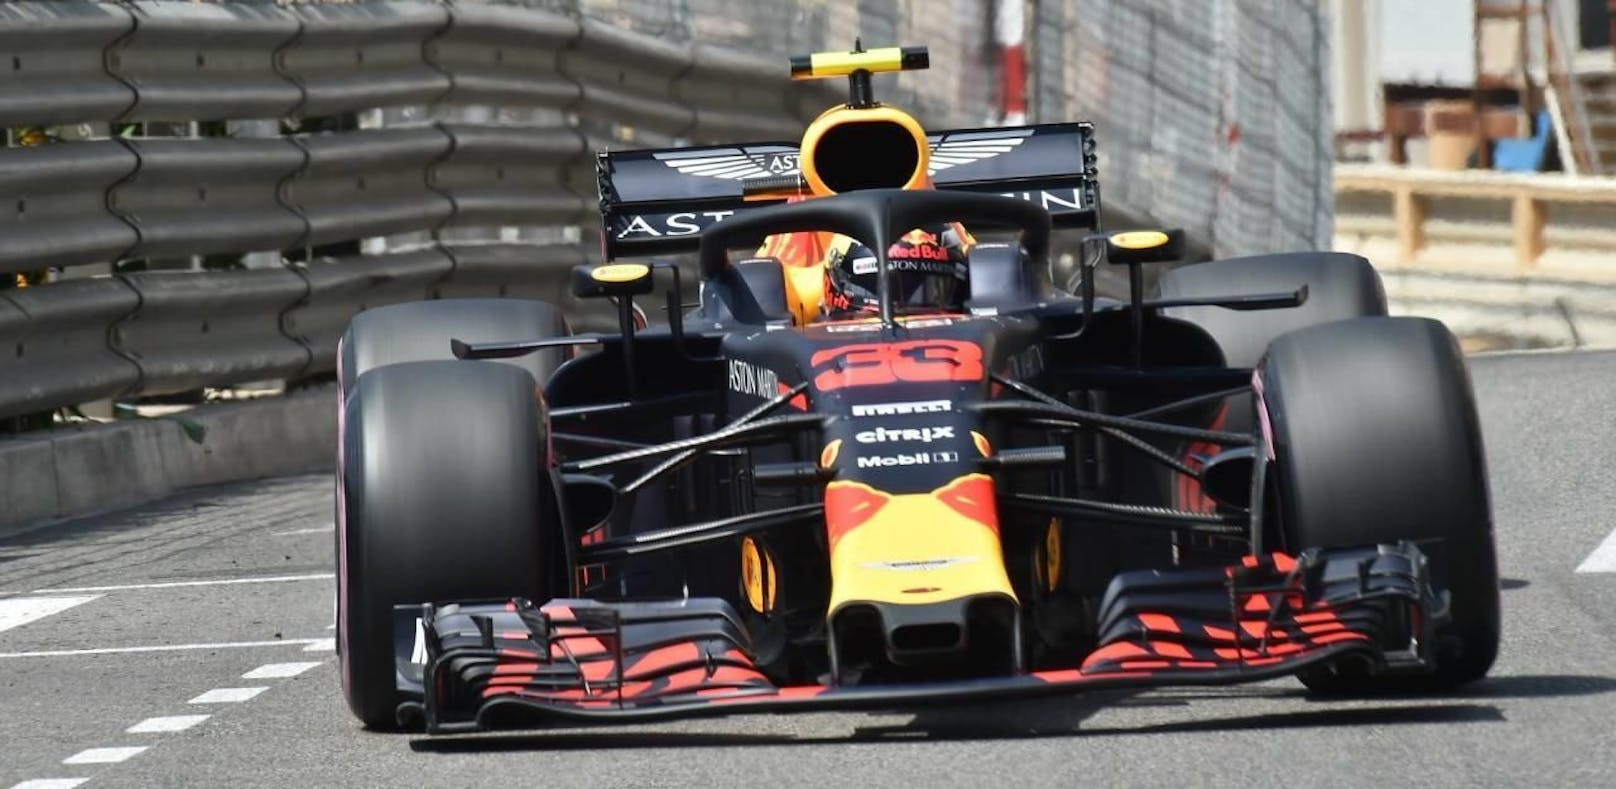 Trotz Motor-Problem! Sieg für Ricciardo in Monaco